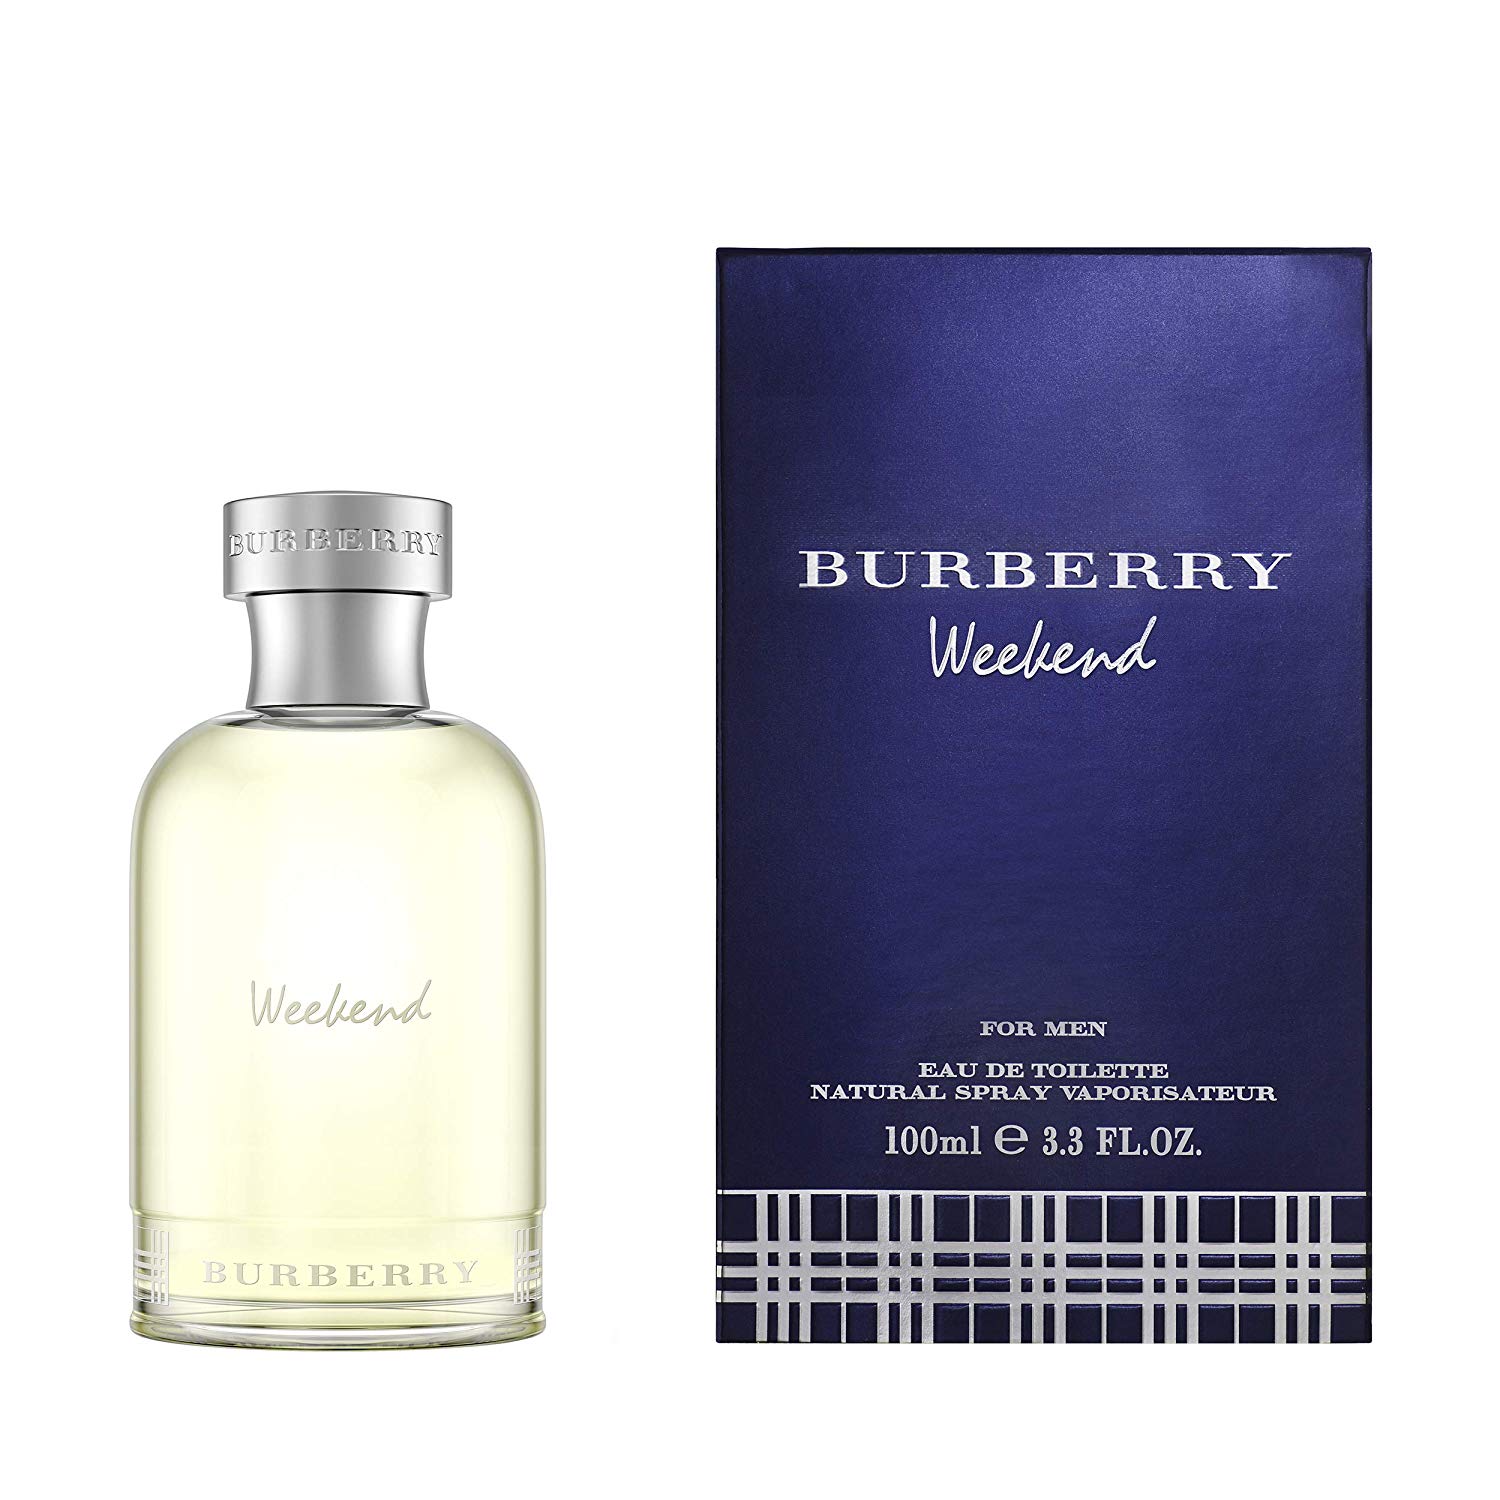 BURBERRY WEEKEND FOR MEN EDT 100ML - Alinjazperfumes